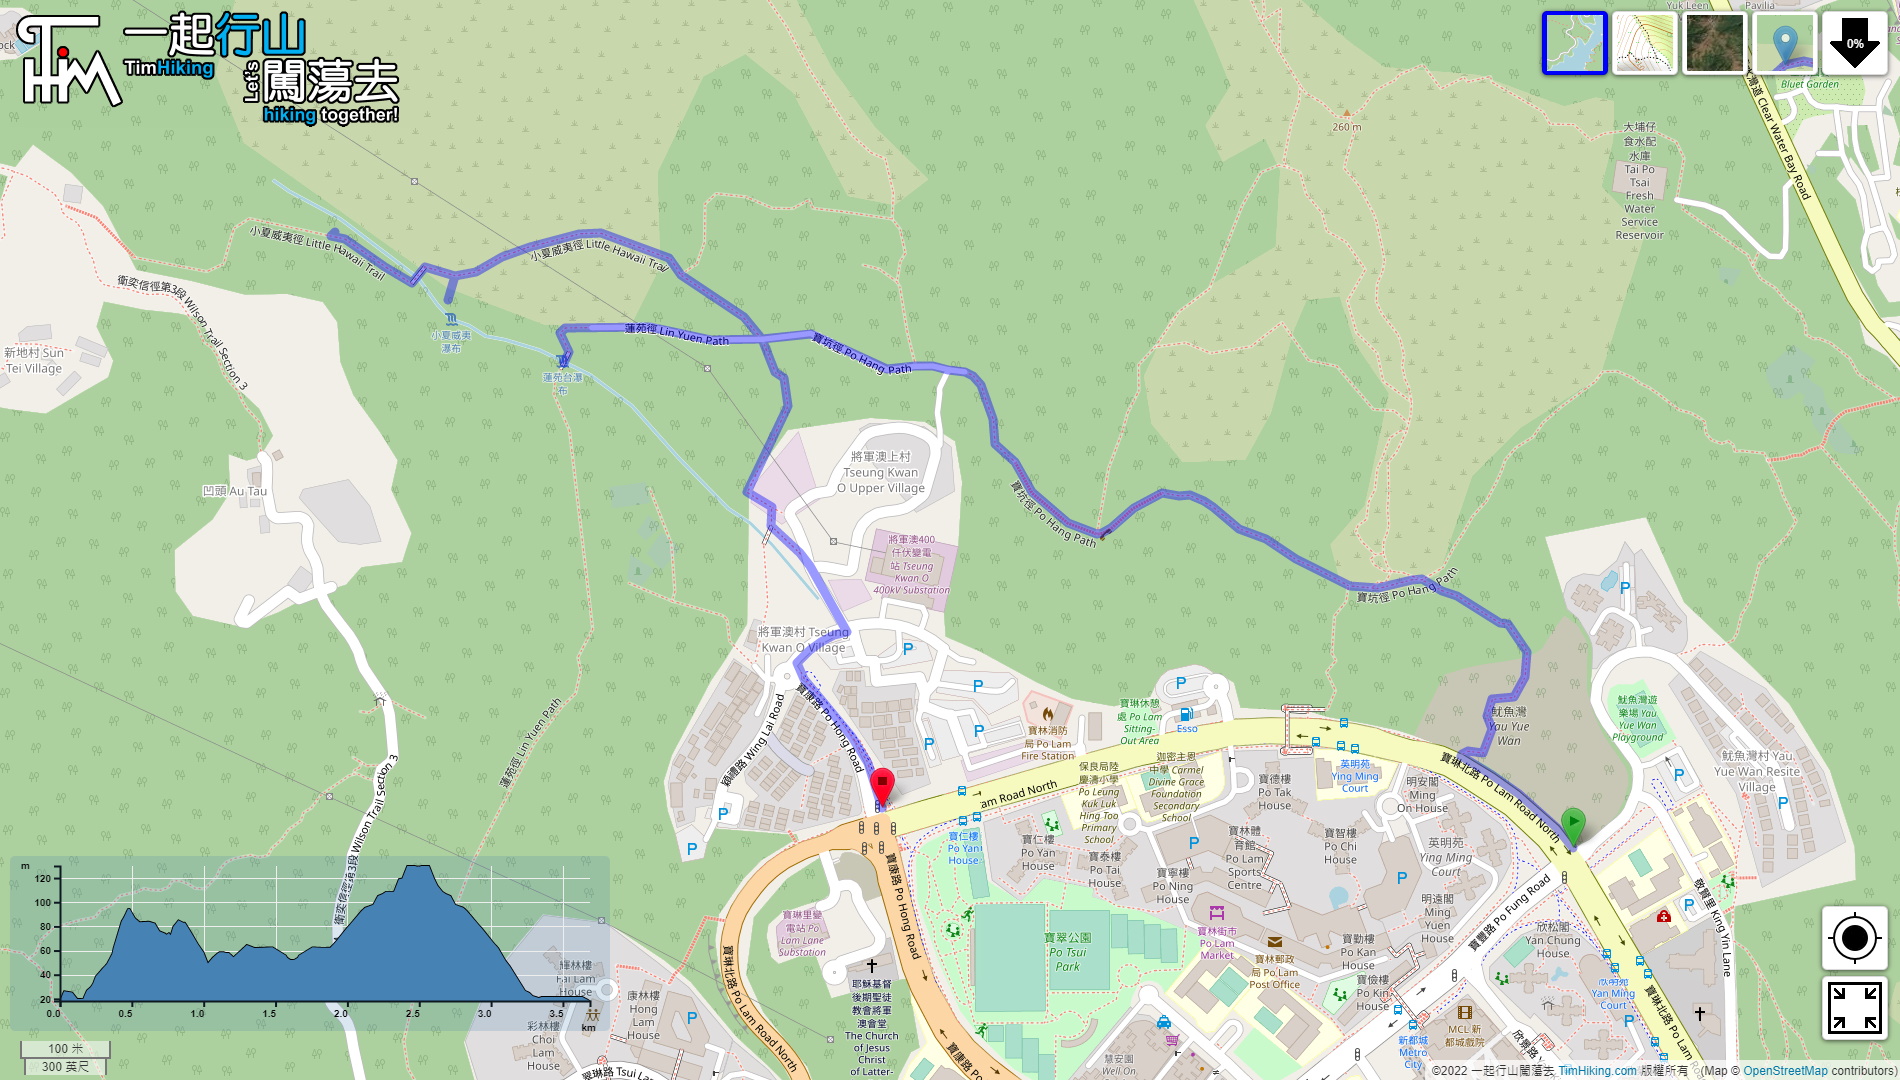 「Little Hawaii Trail, Lin Yuen Toi Falls」路線Map